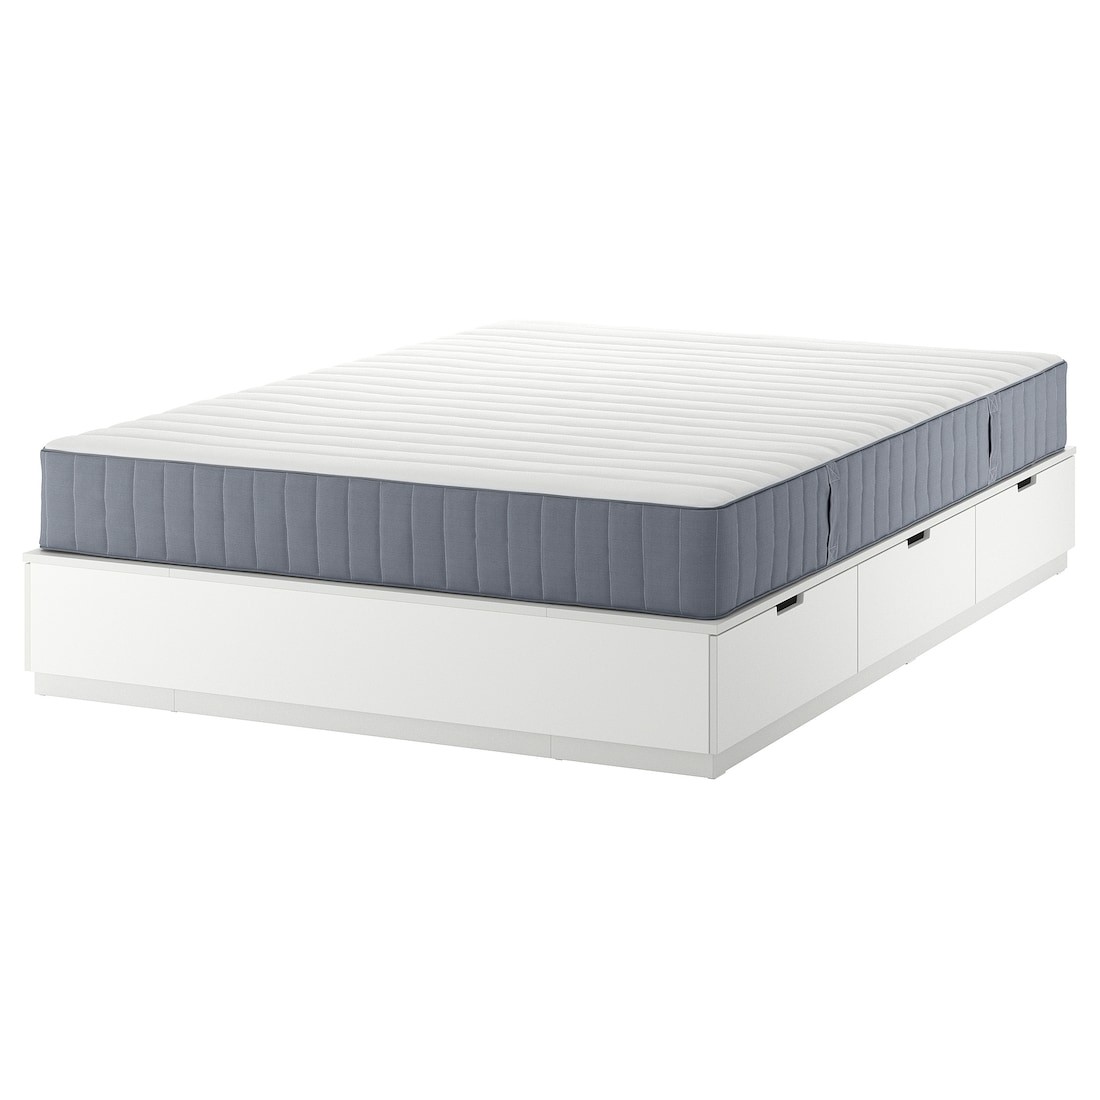 NORDLI Кровать с контейнером и матрасом, белый / Valevåg средней жесткости, 140x200 см